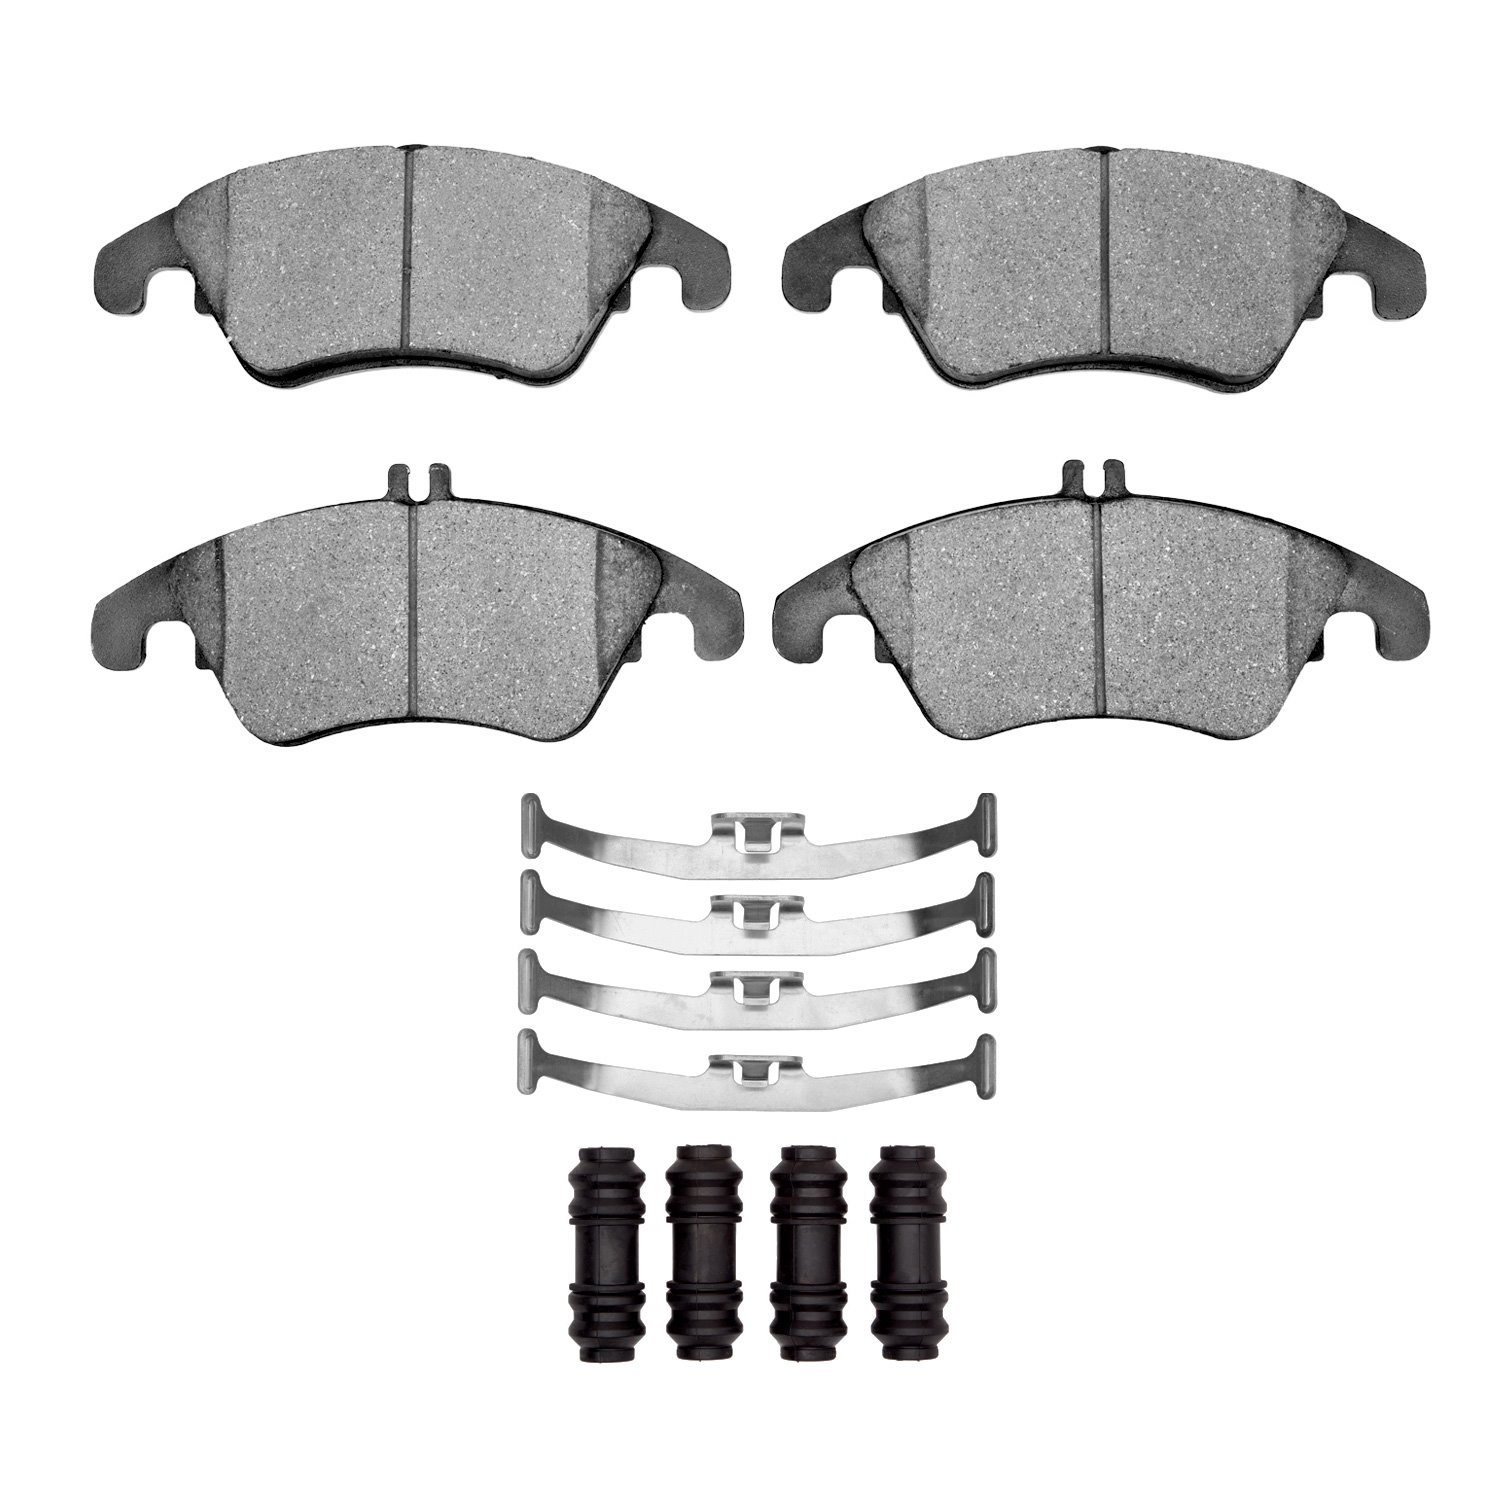 1311-1342-01 3000-Series Semi-Metallic Brake Pads & Hardware Kit, 2008-2020 Mercedes-Benz, Position: Front